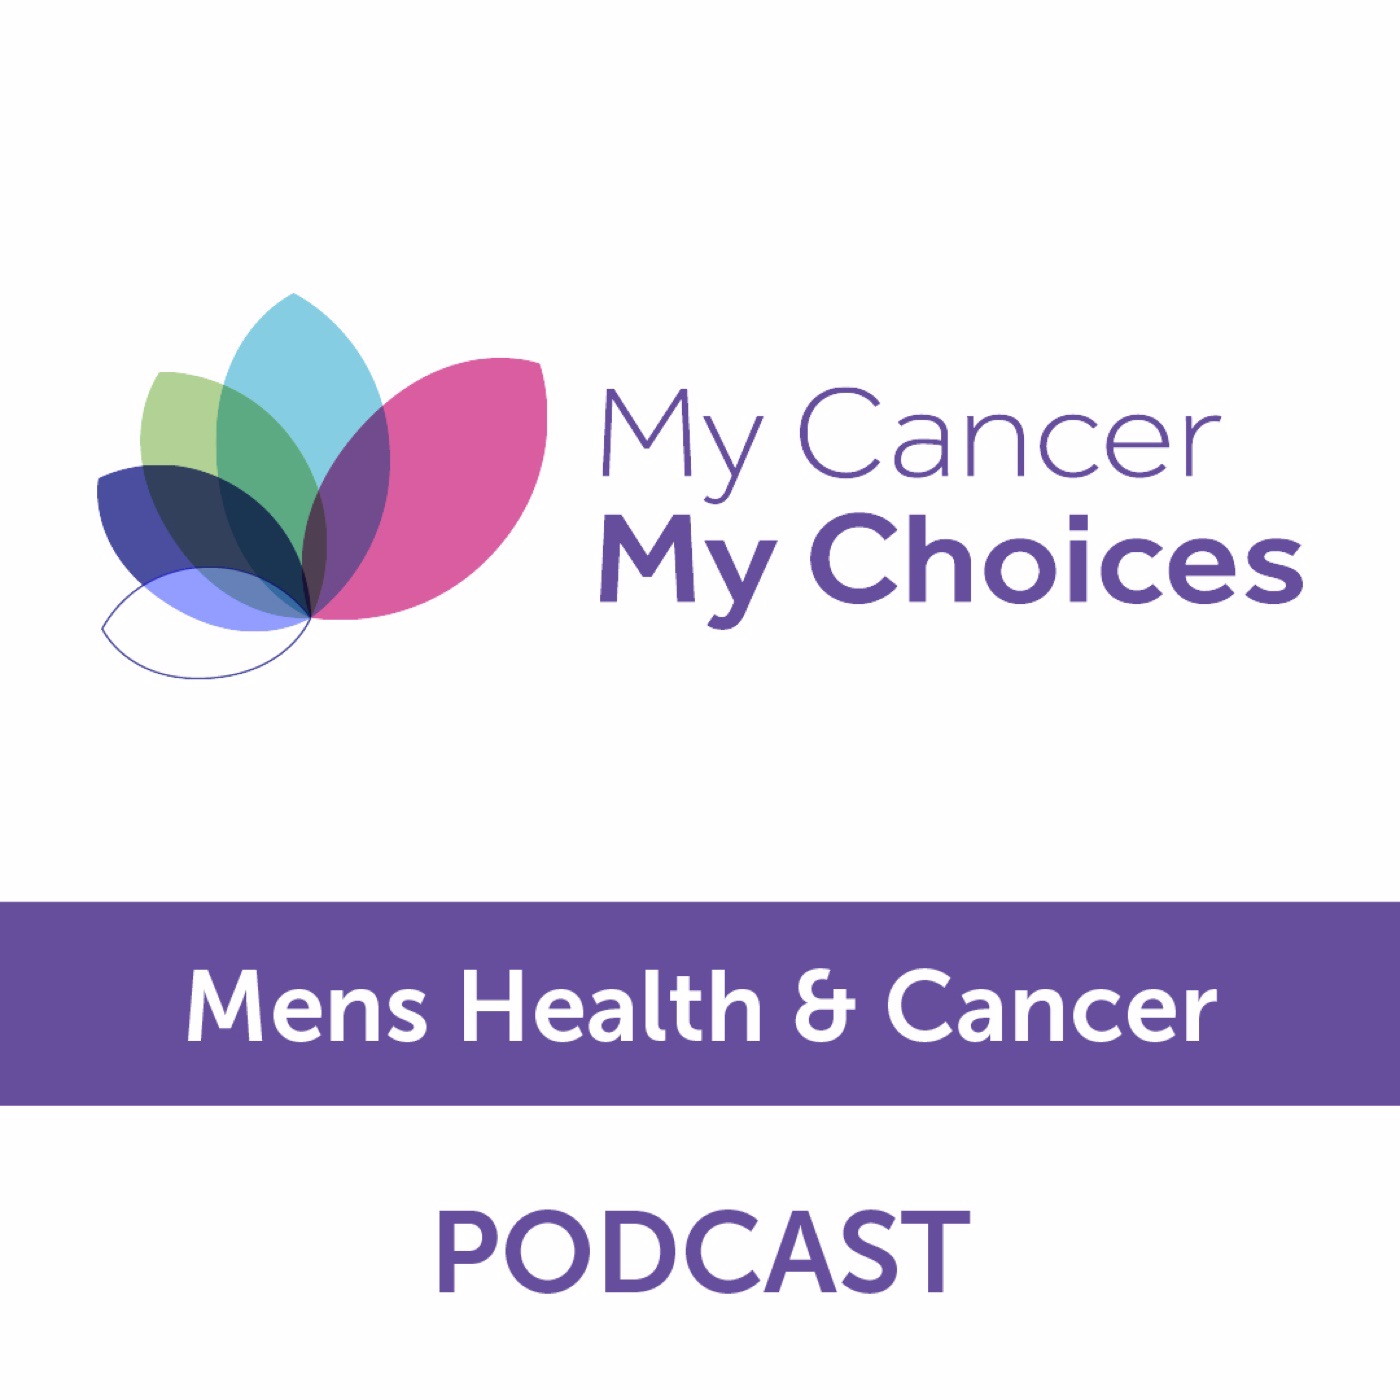 My Cancer My Choices Podcast